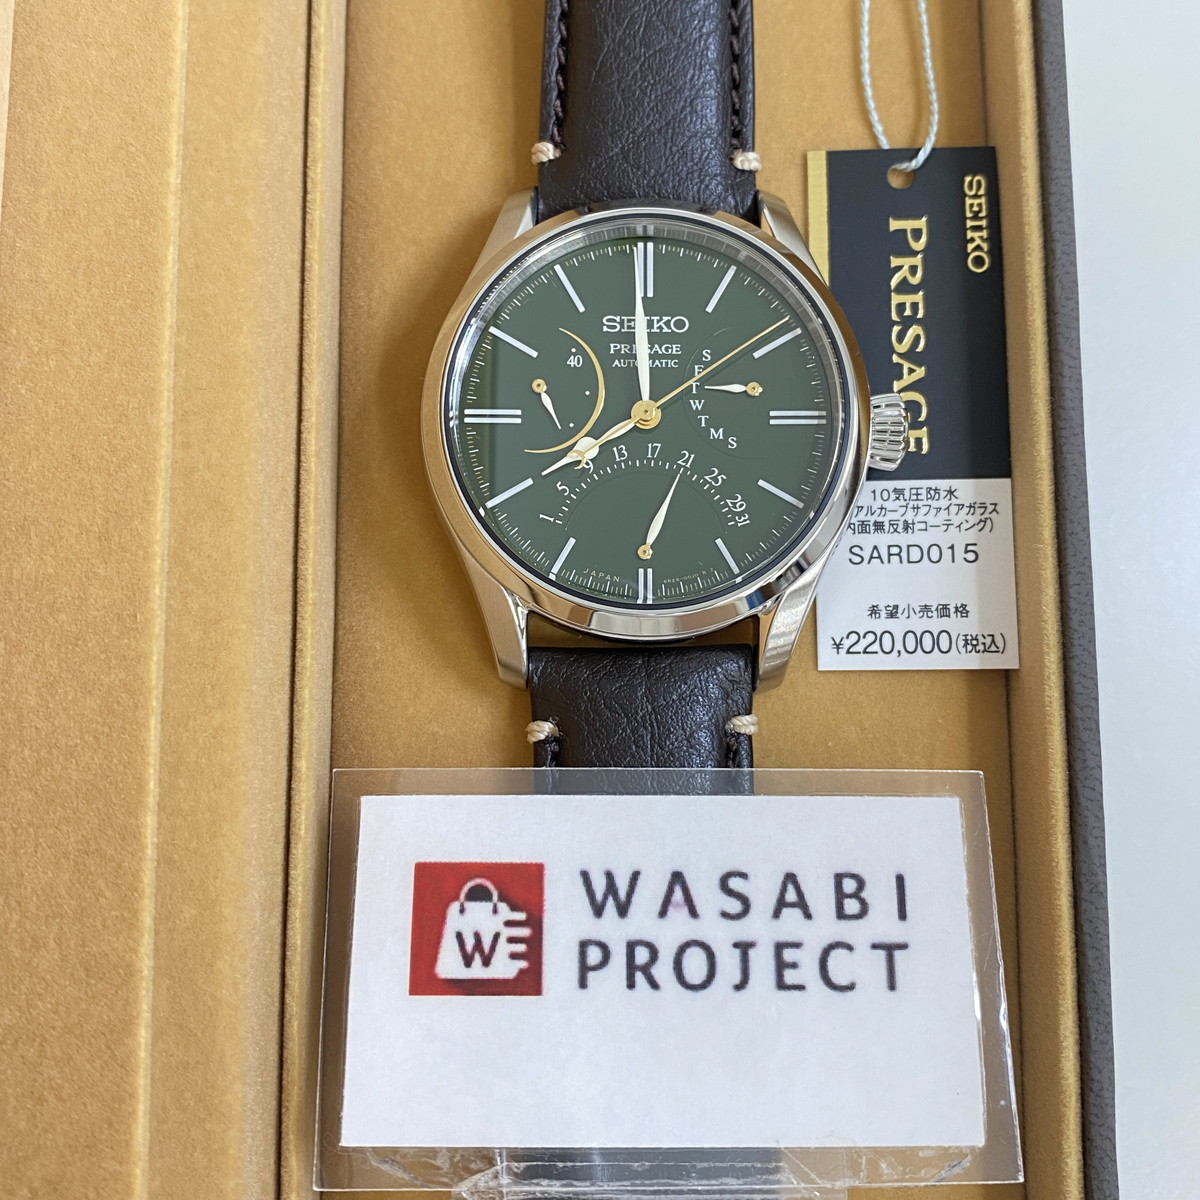 SEIKO SARD015 セイコー メカニカル プレザージュ プレステージライン 漆ダイヤル グリーン メンズ 腕時計